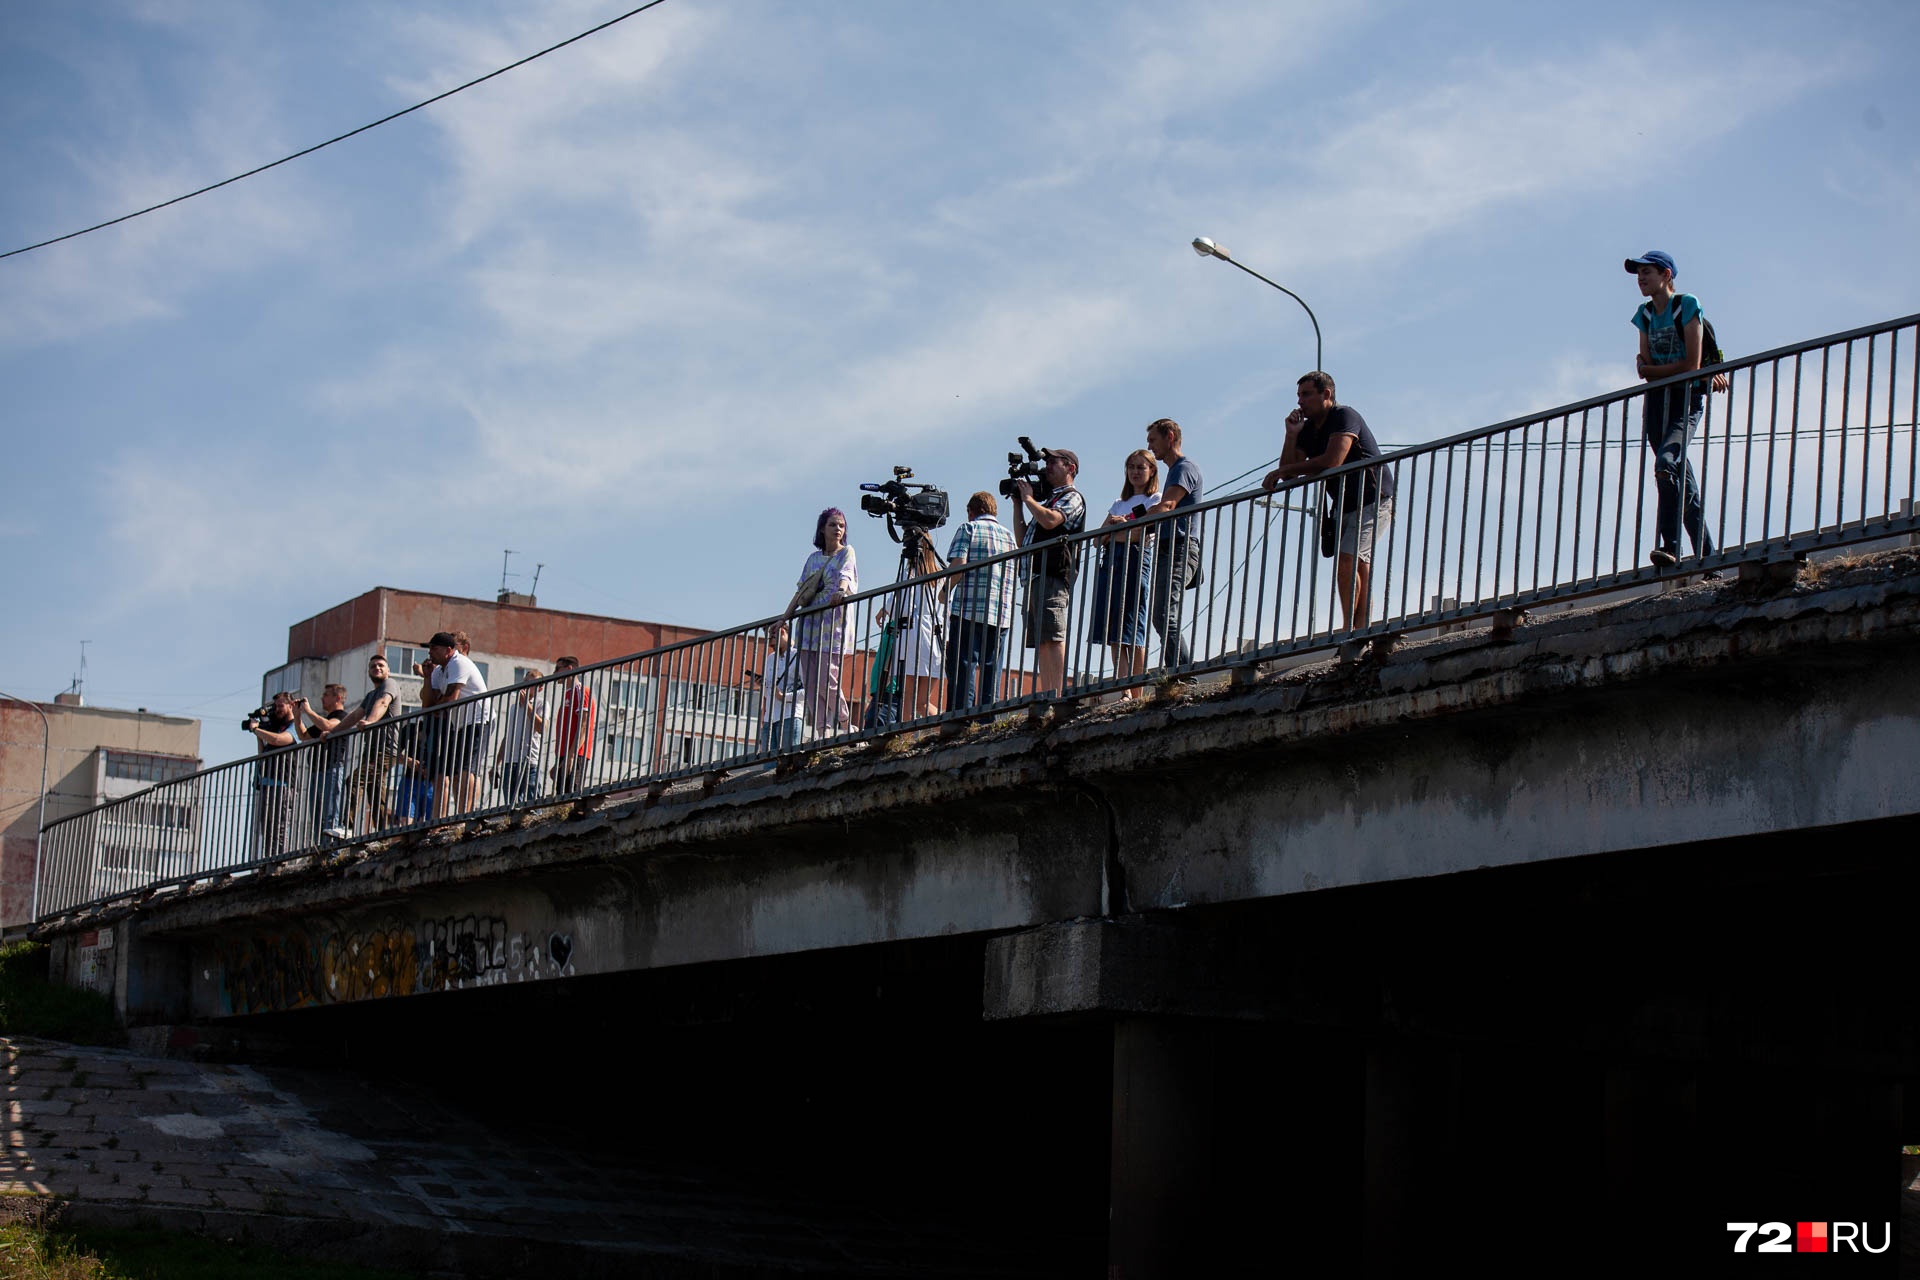 Журналисты тоже удобно устроились на мосту и снимали, как спасатели обследуют дно озера